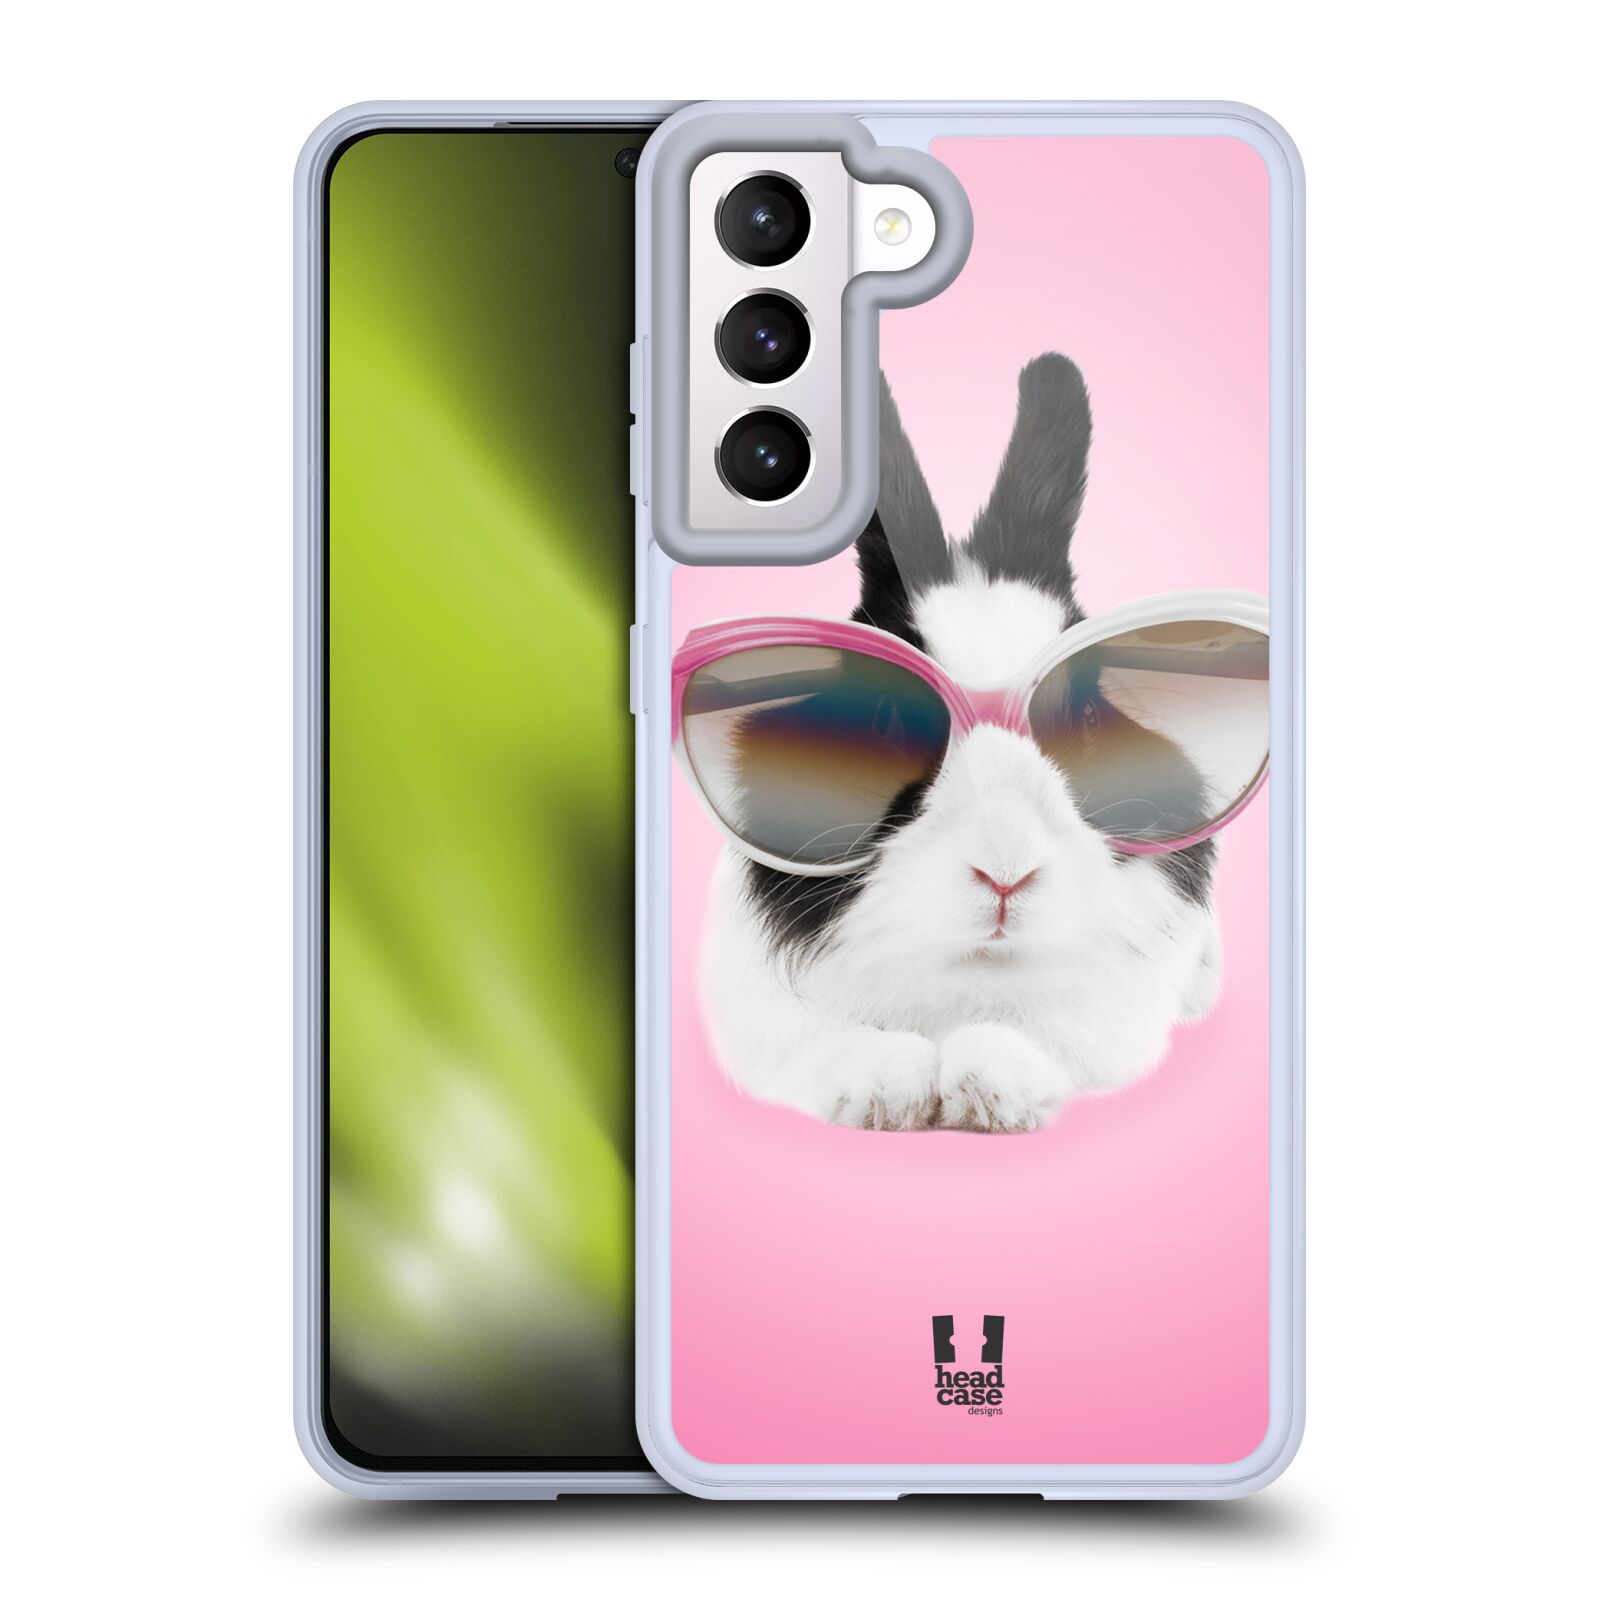 Plastový obal HEAD CASE na mobil Samsung Galaxy S21 5G vzor Legrační zvířátka roztomilý králíček s brýlemi růžová